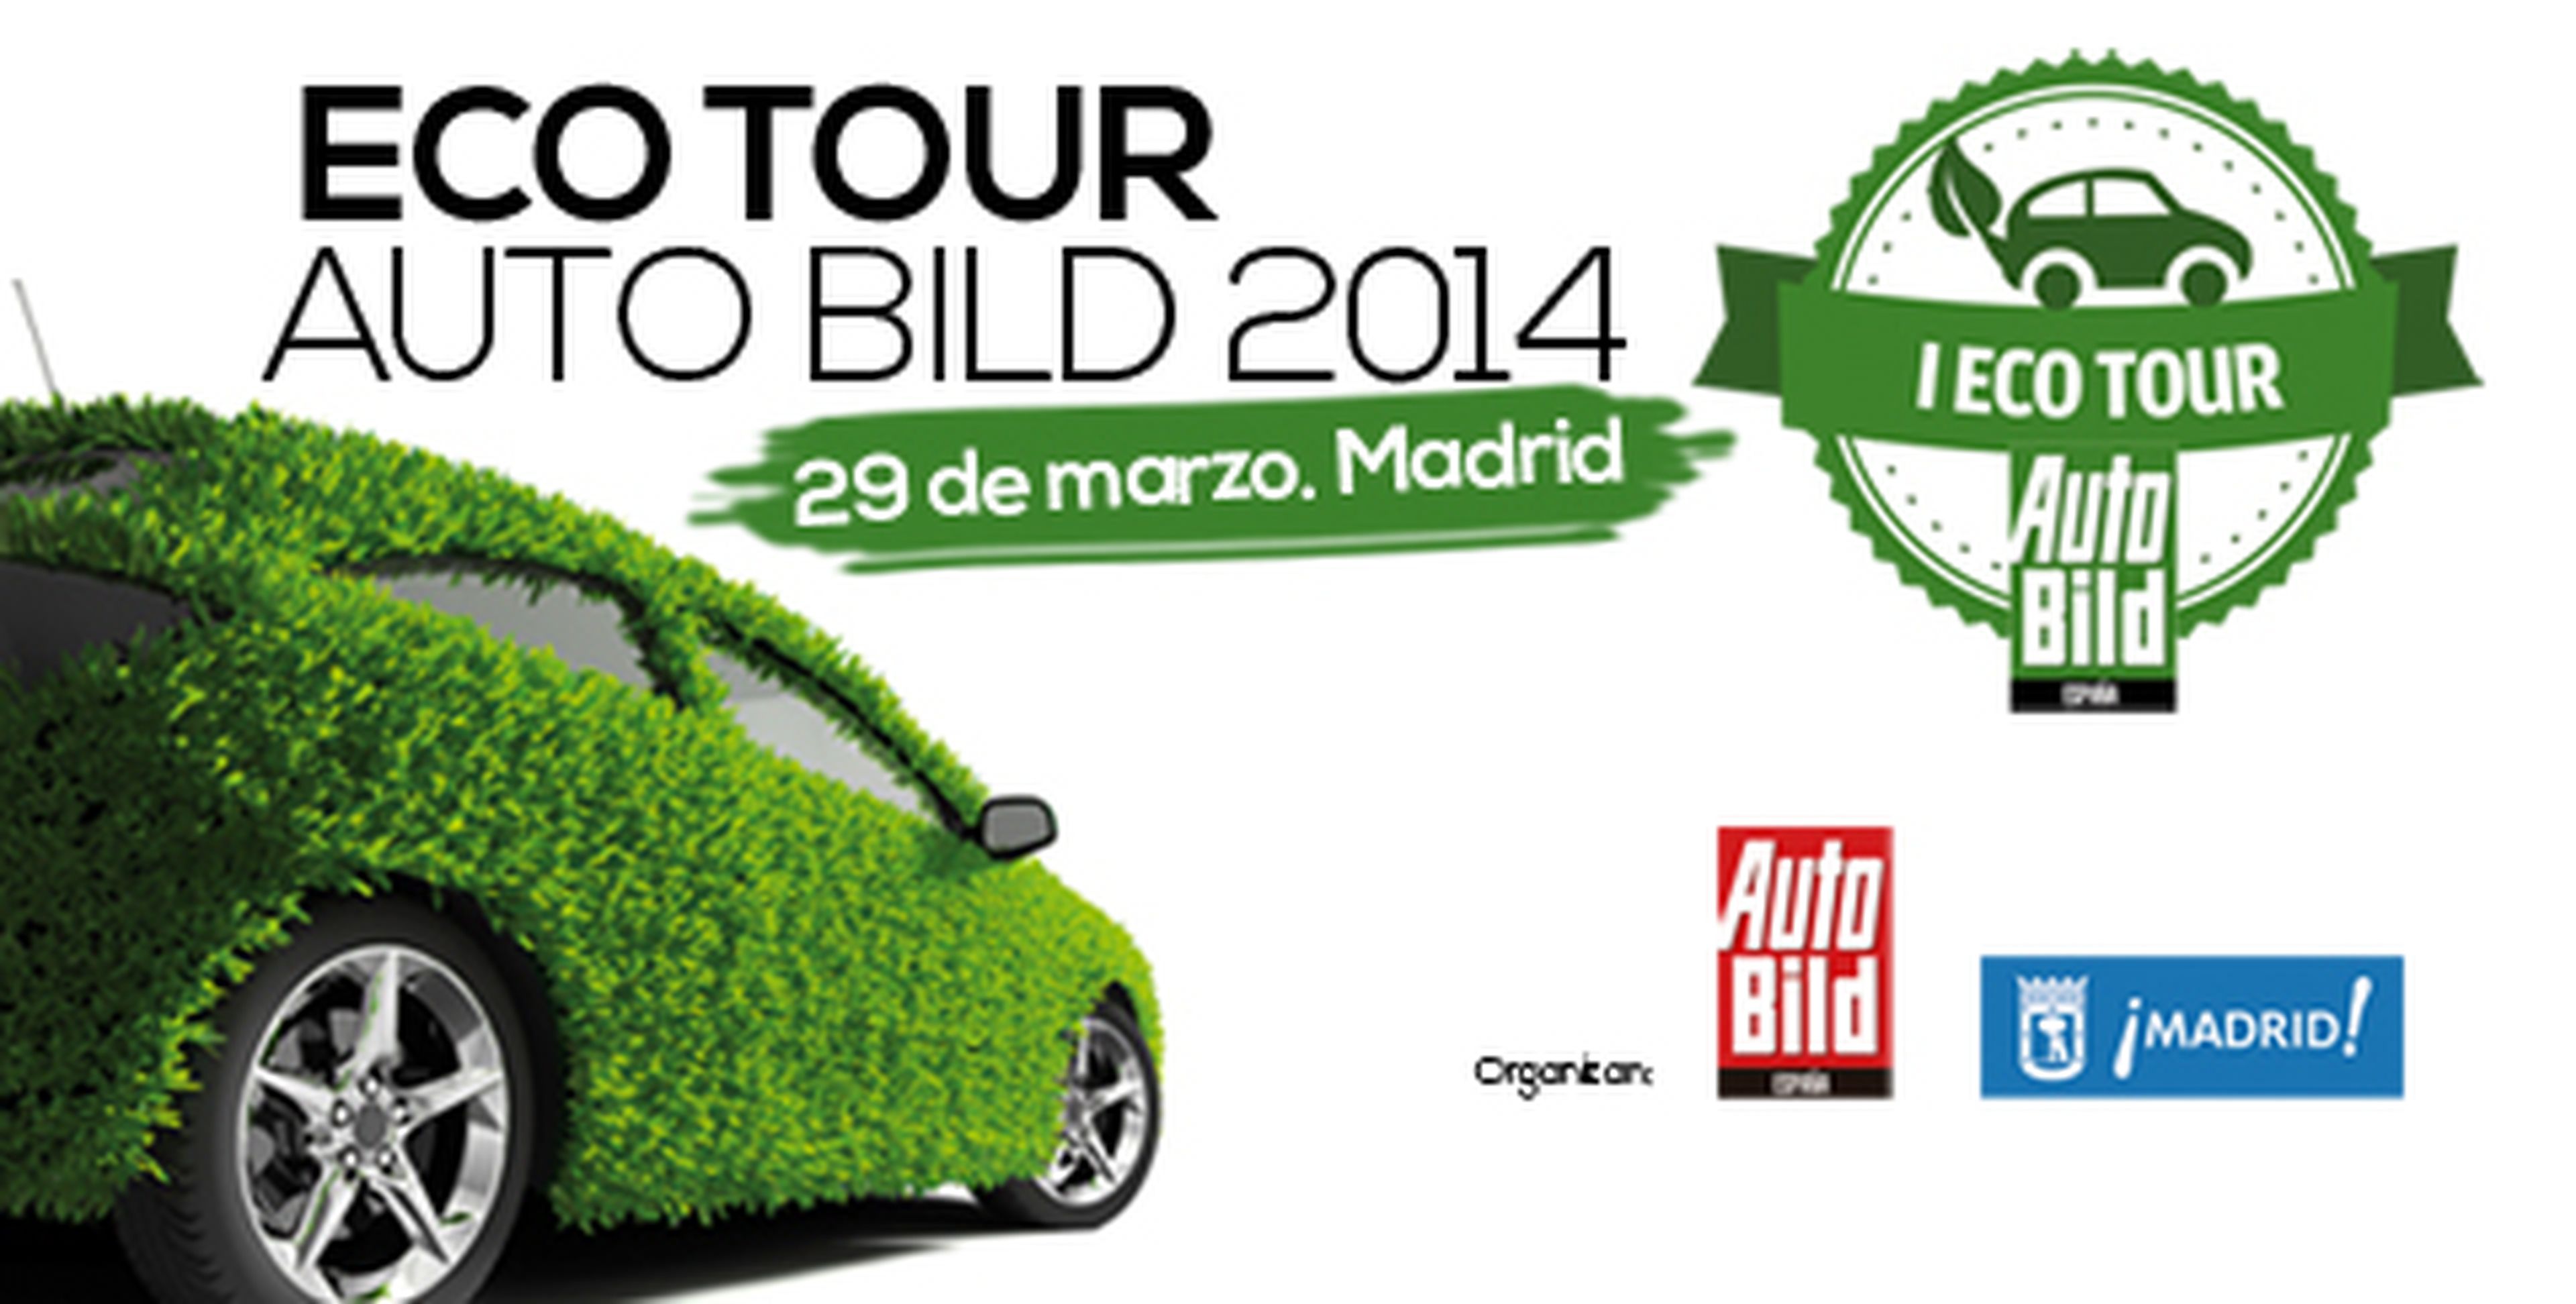 BP Ultimate será el carburante del Eco Tour AUTO BILD 2014